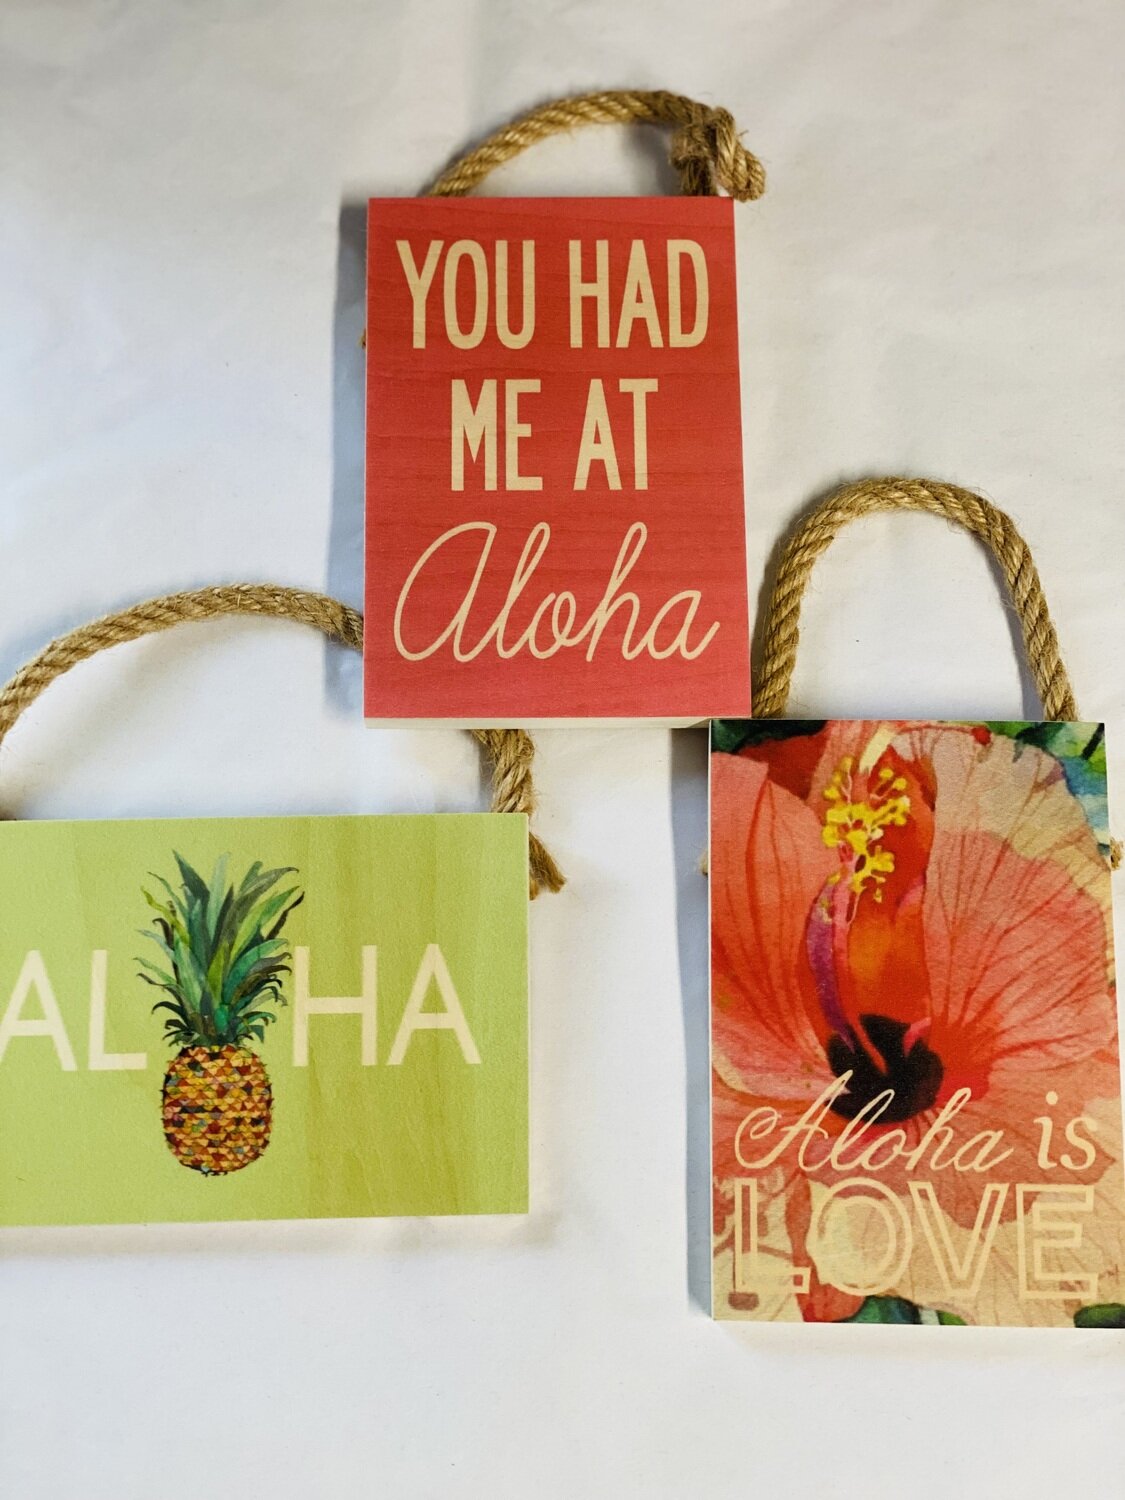 Signs with Aloha